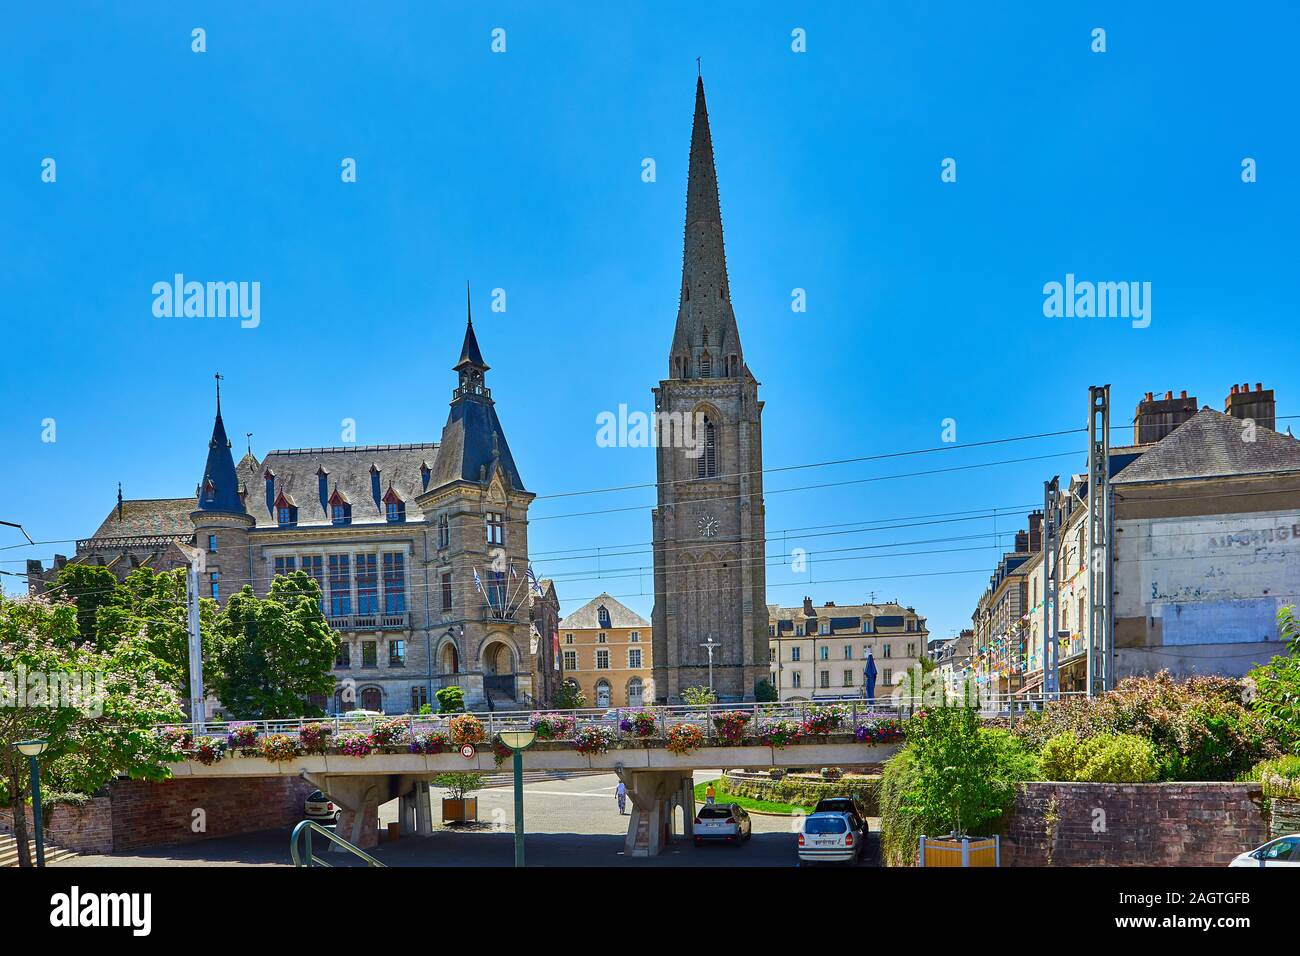 Bild von Redon Mairie Büro, Mairie de Redon. Redon ist ein beliebtes Touristenziel, wenn der Süden der Bretagne, Frankreich. Mit Einkaufsmöglichkeiten, Restaurants, t Stockfoto